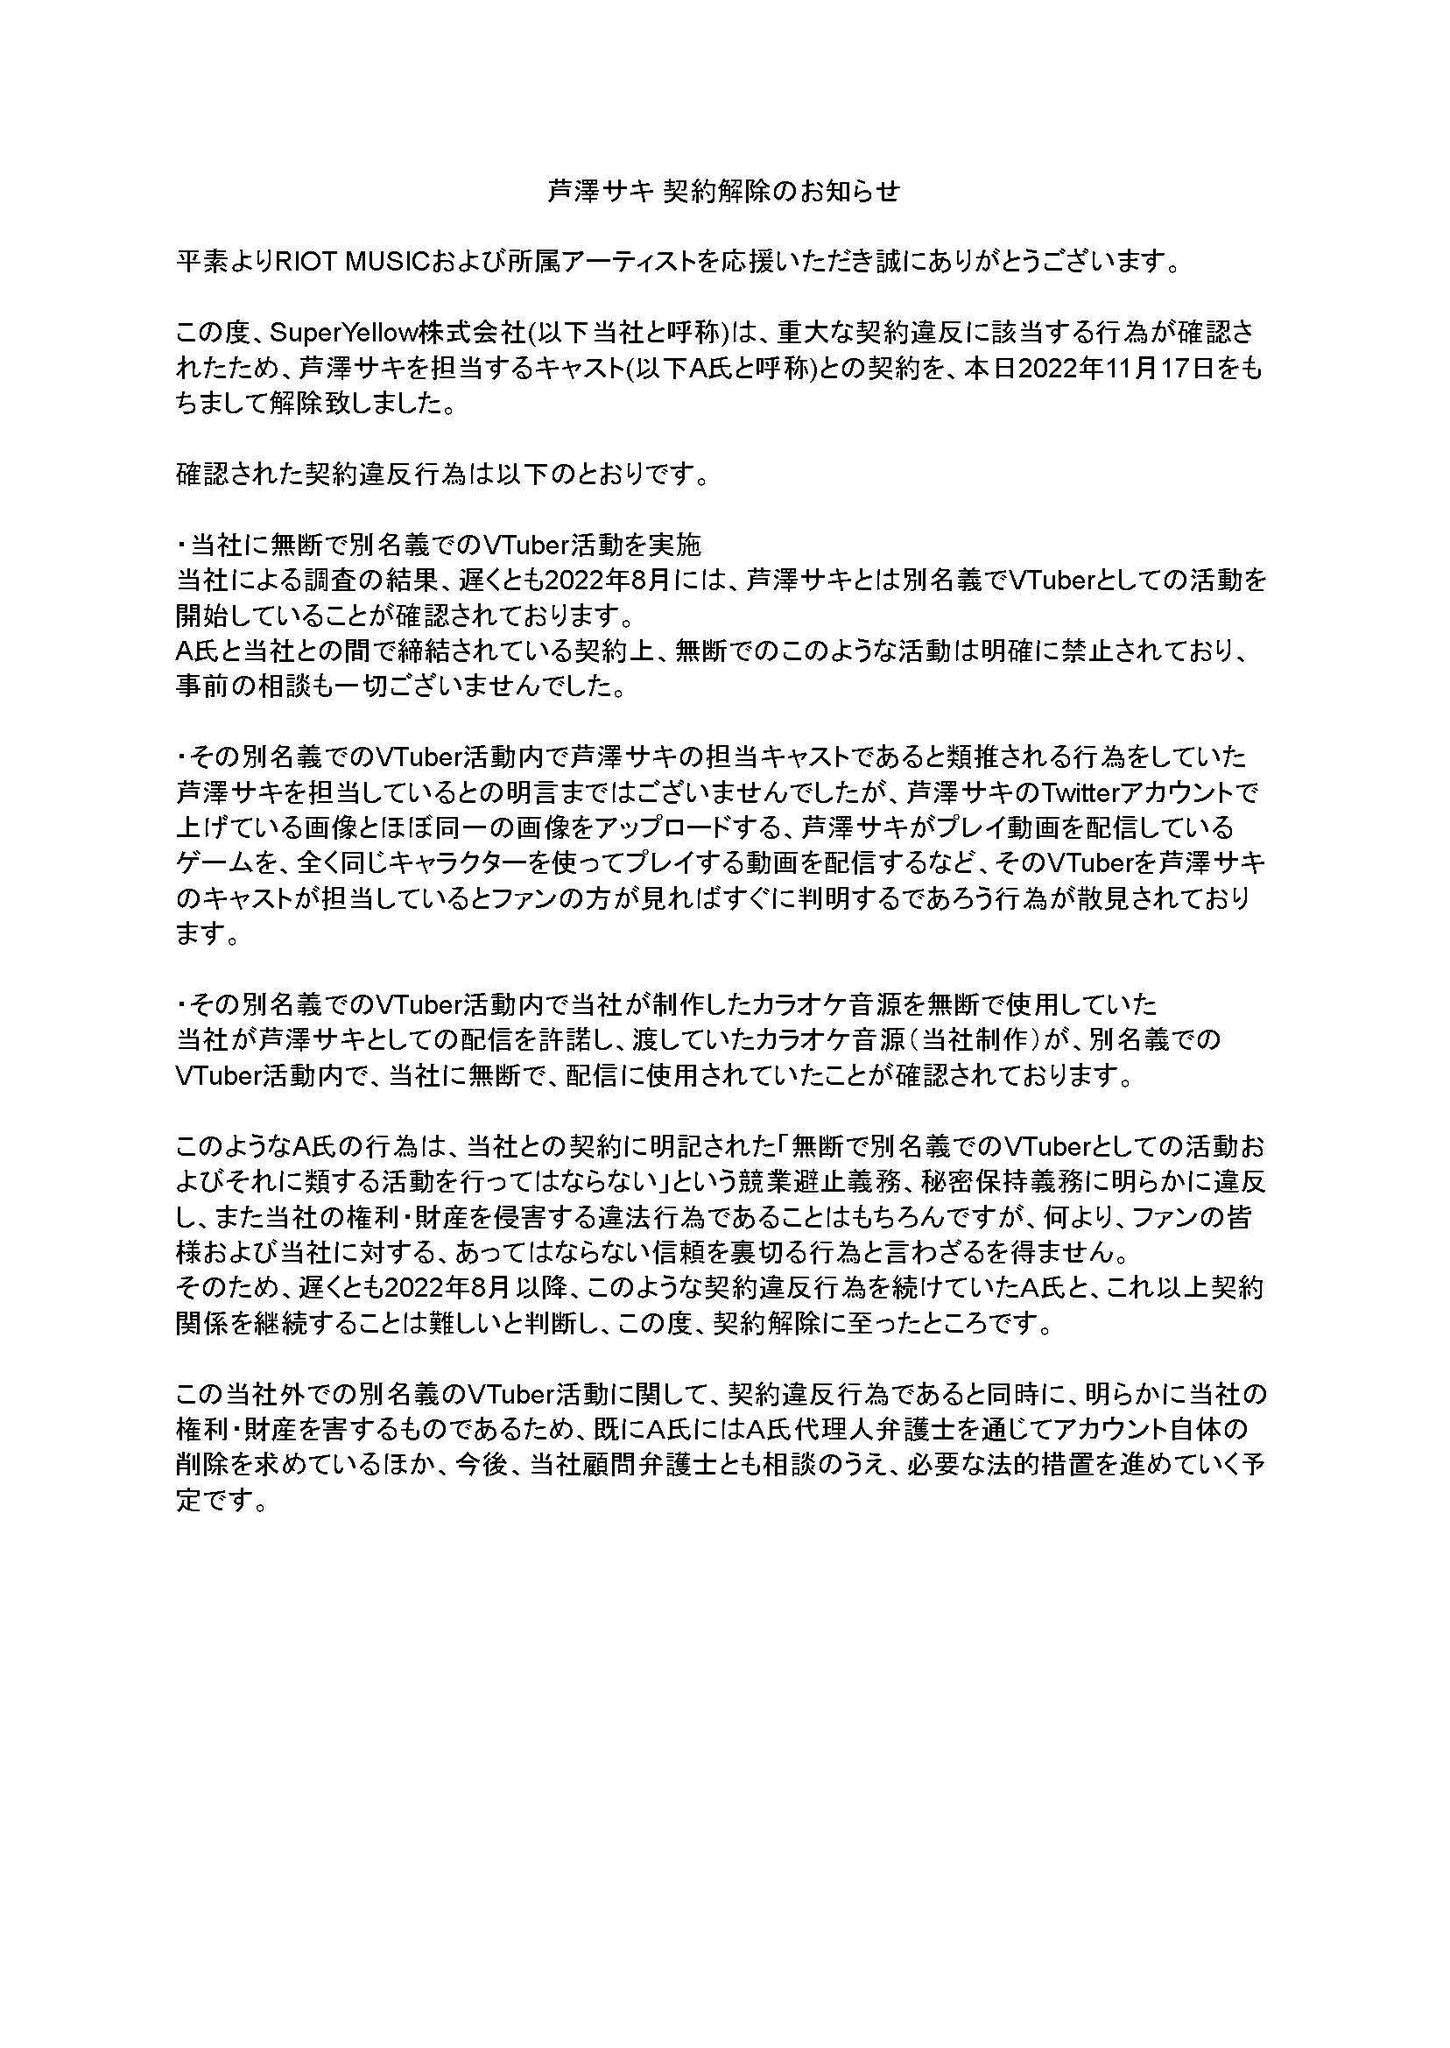 [Vtub] 芦澤サキ 契約解除のお知らせ